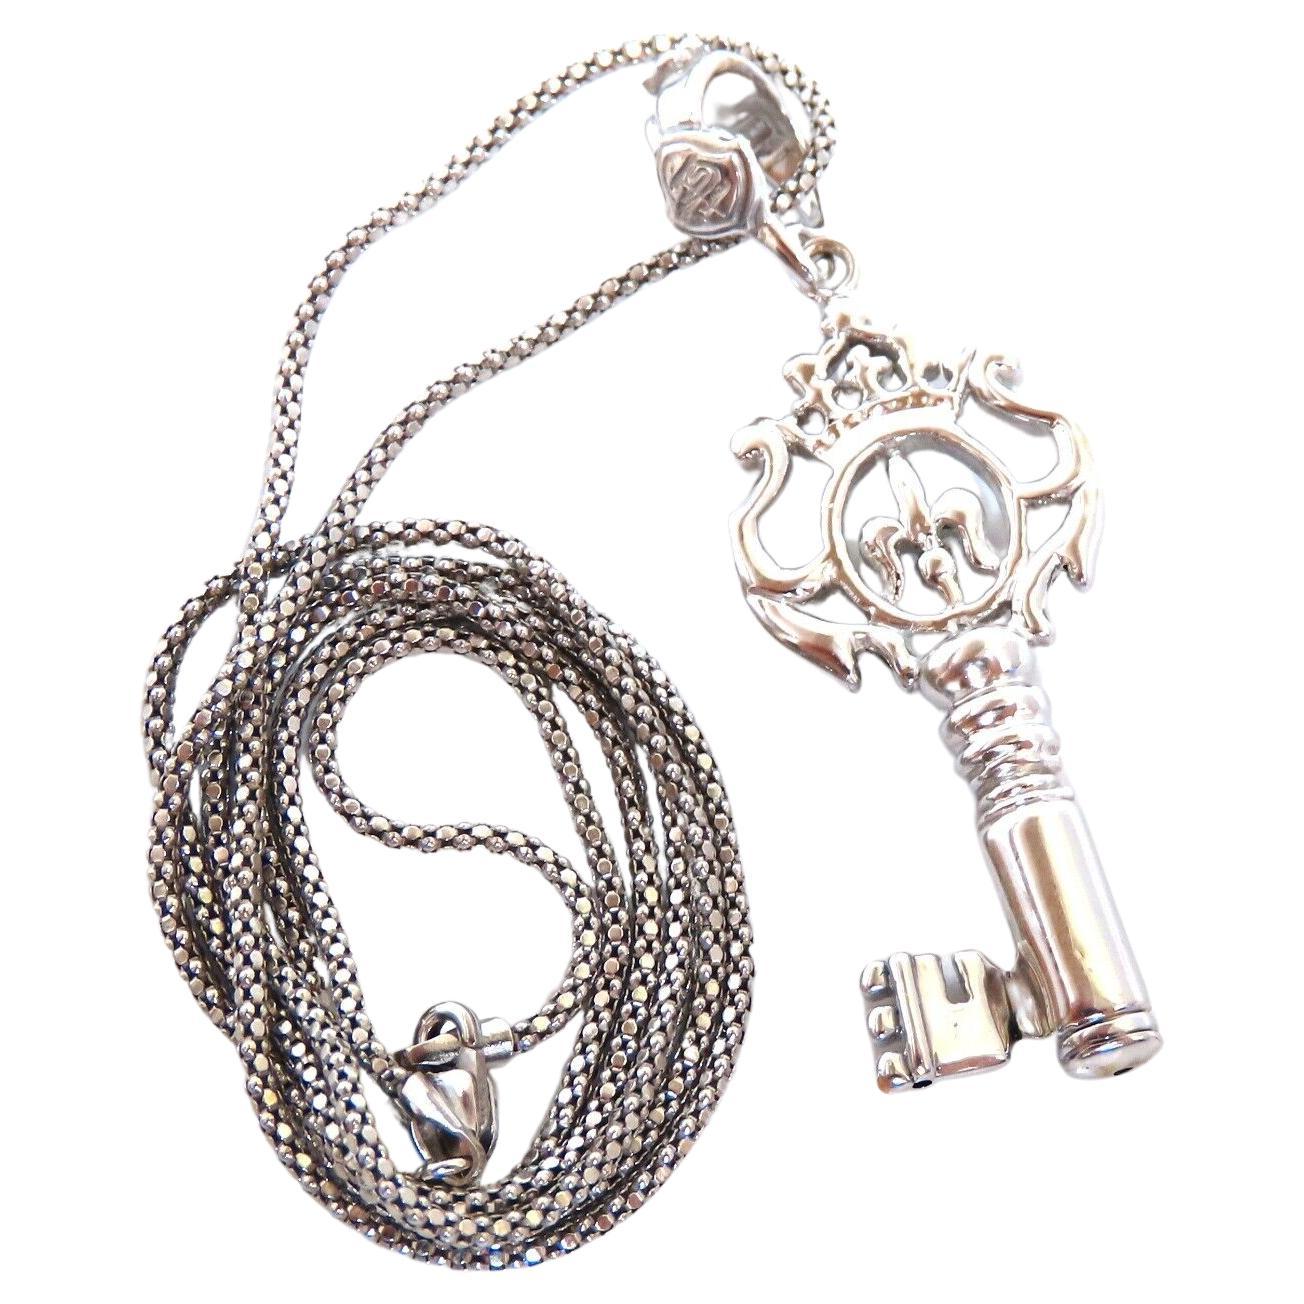 14kt Gold Key Charm Necklace